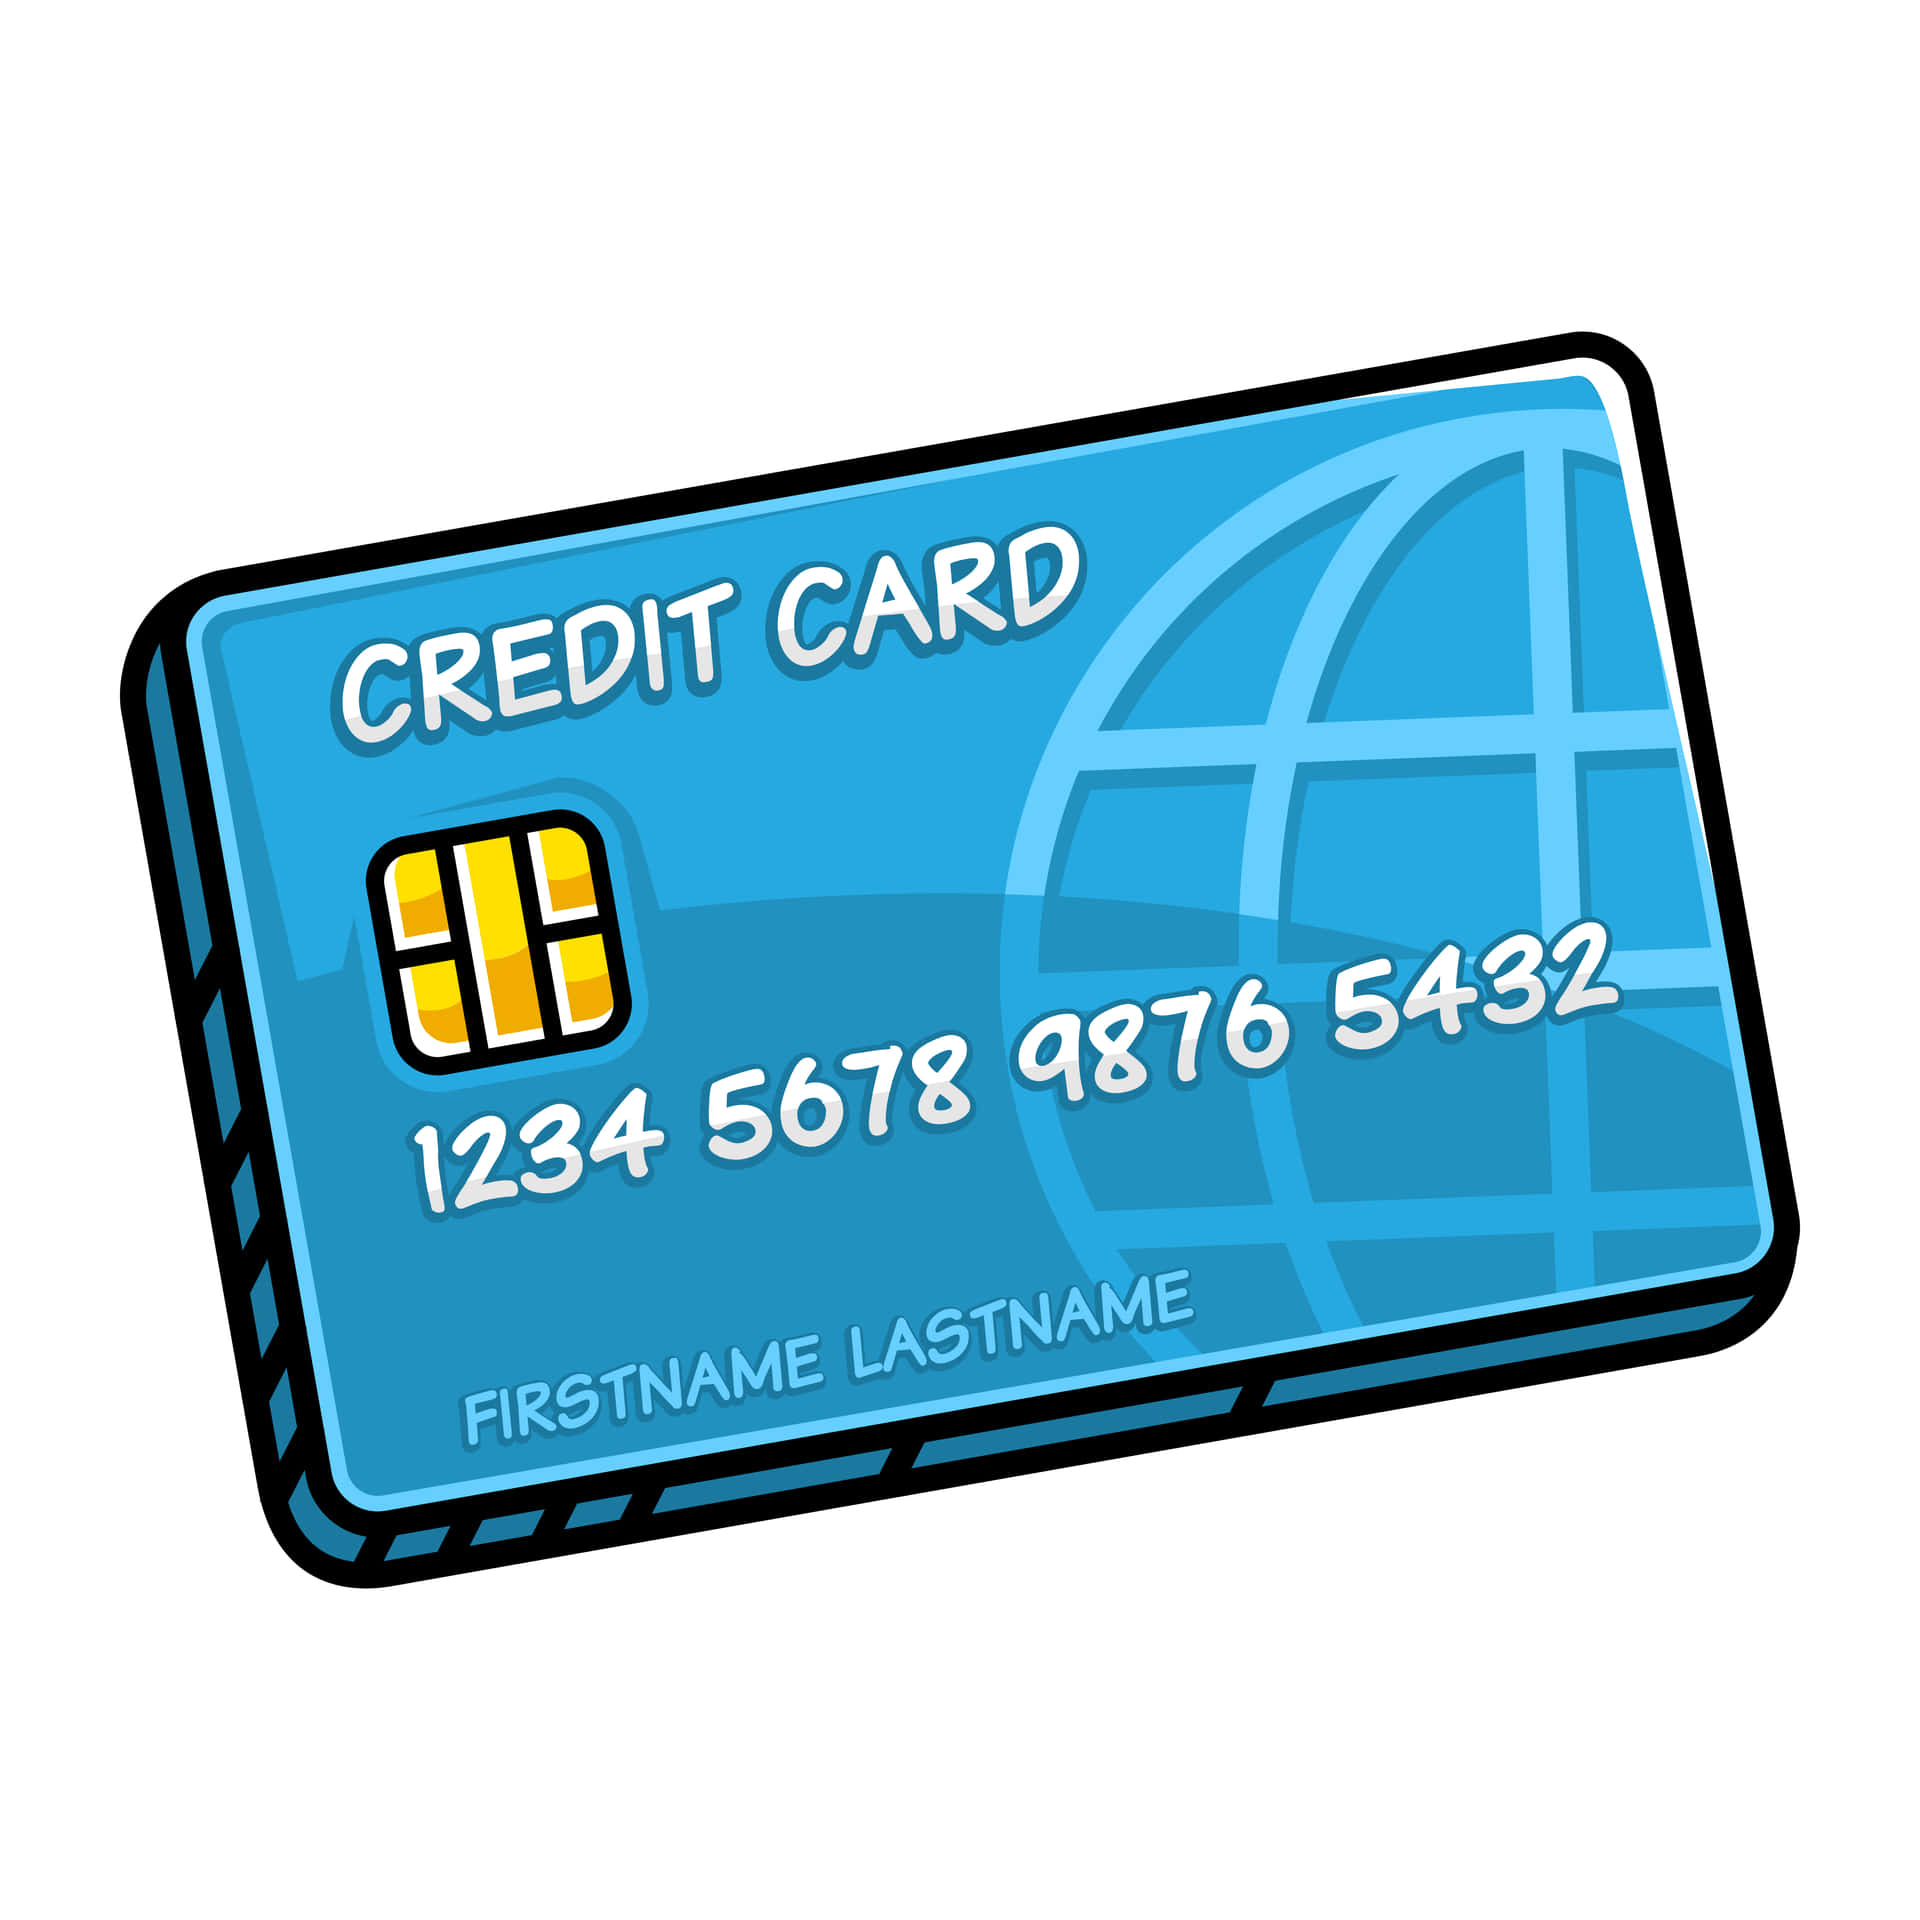 Sägadjö Till Kontanter Och Byt Till Säkrare Digitala Betalningar Med Ett Kreditkort